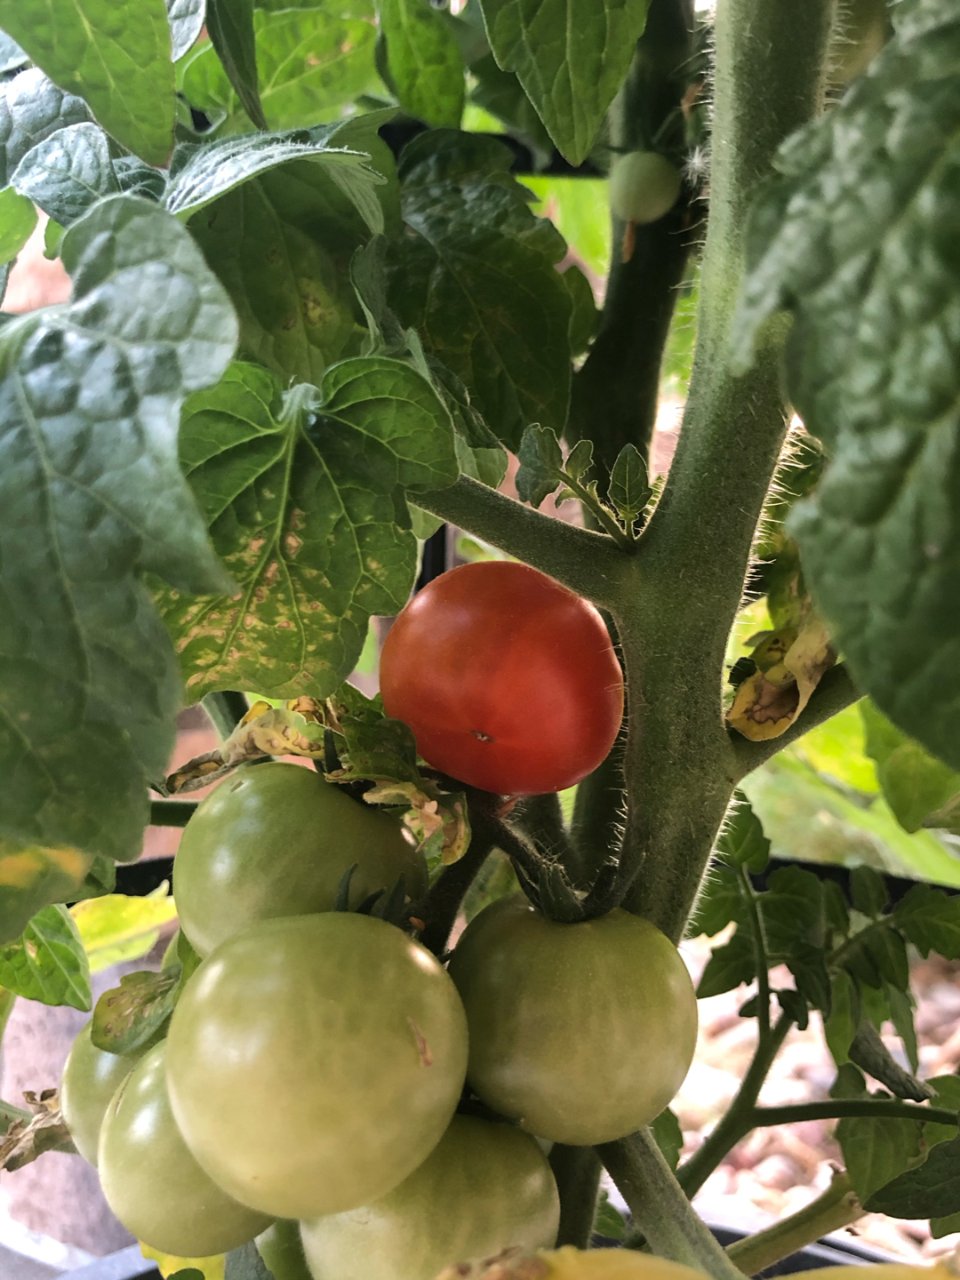 第一枚番茄🍅成熟啦...